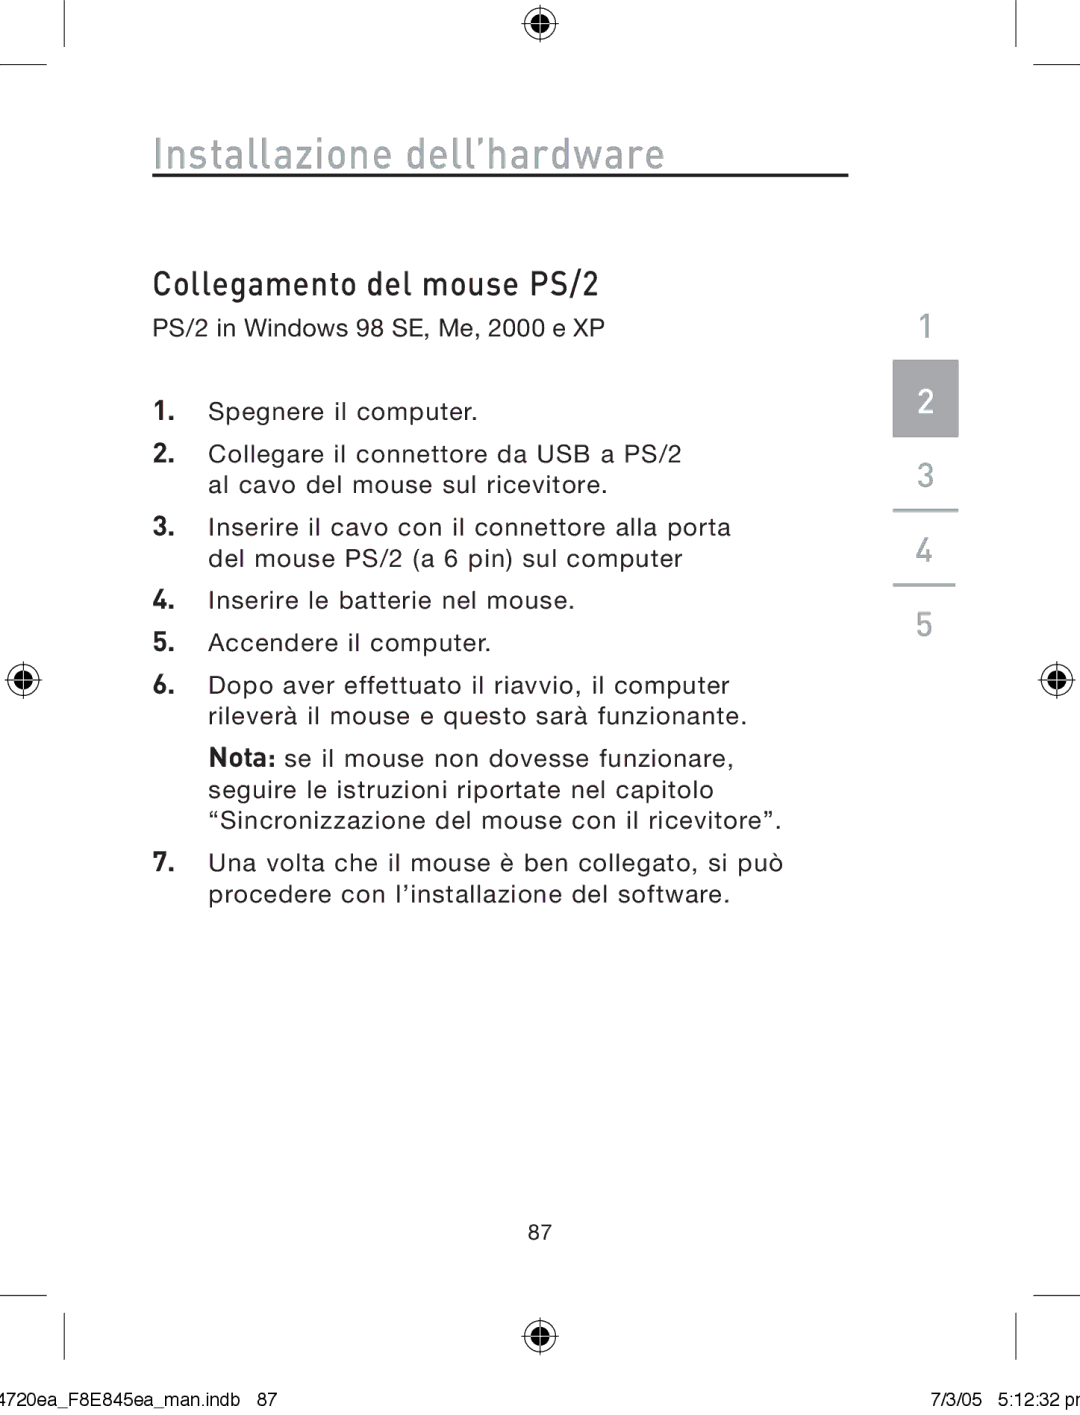 Belkin F8E845ea manual Collegamento del mouse PS/2 